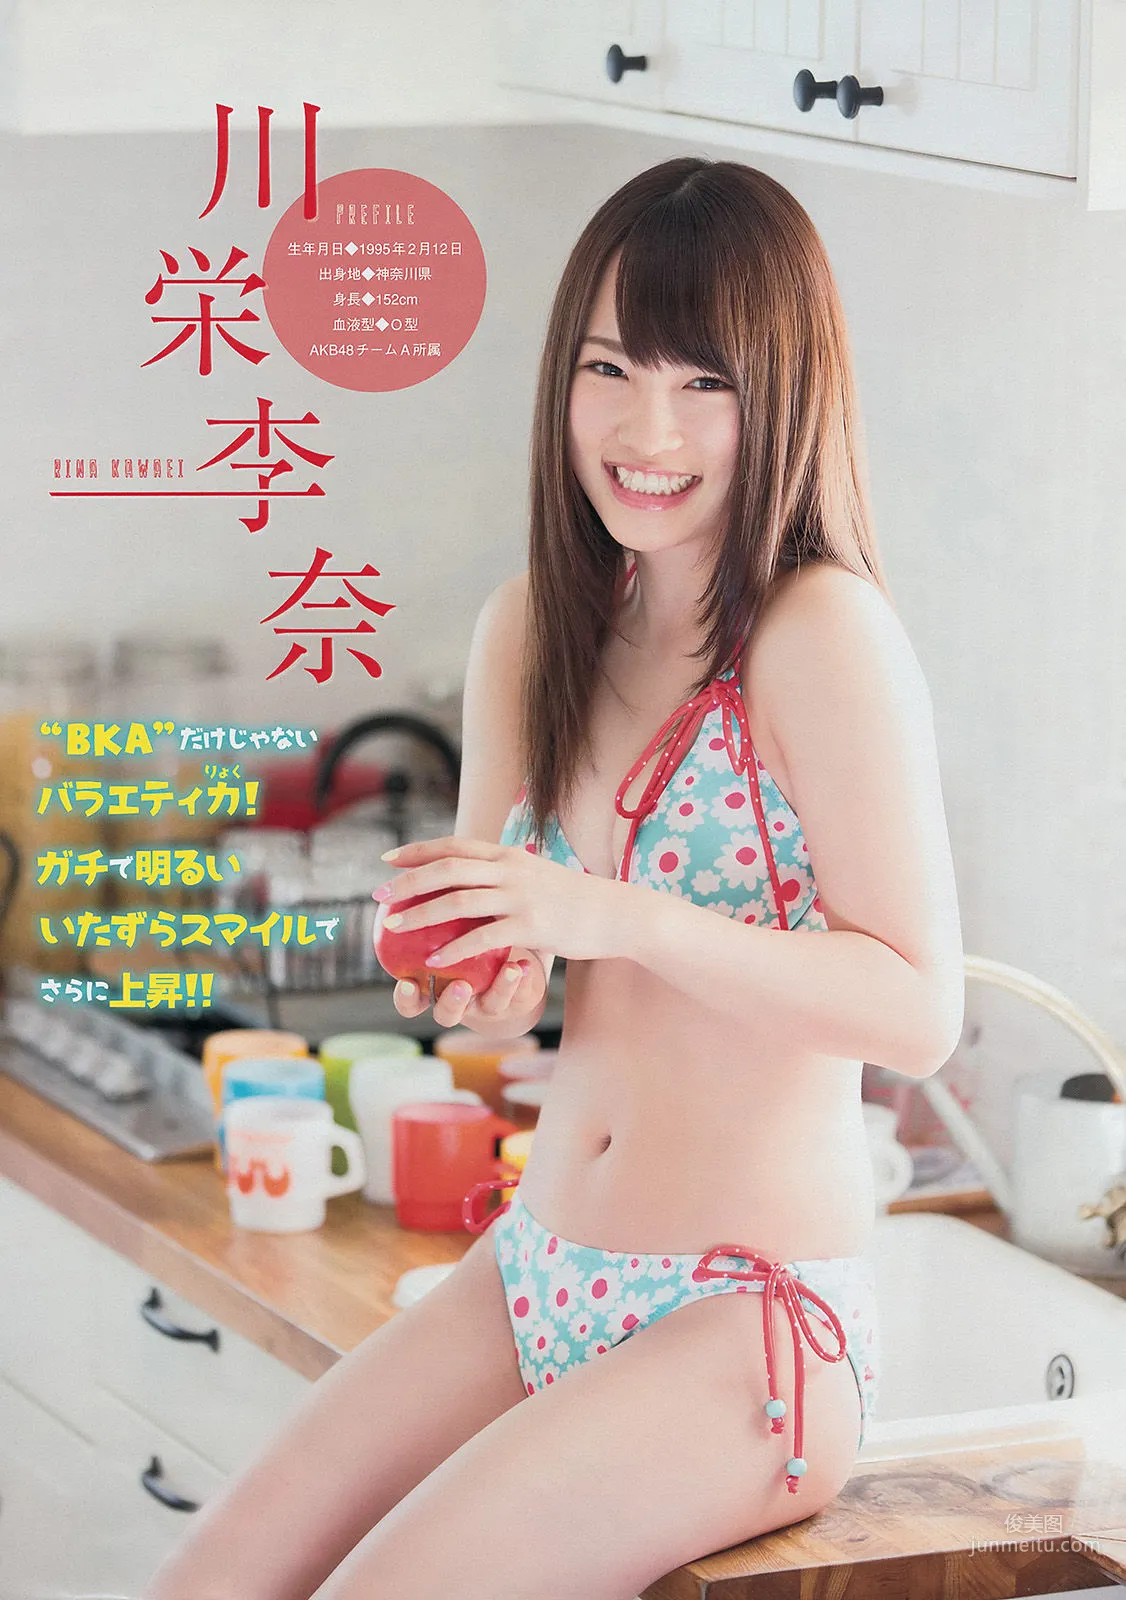 [Young Magazine] 渡辺麻友 川栄李奈 2401年No.27 写真杂志4